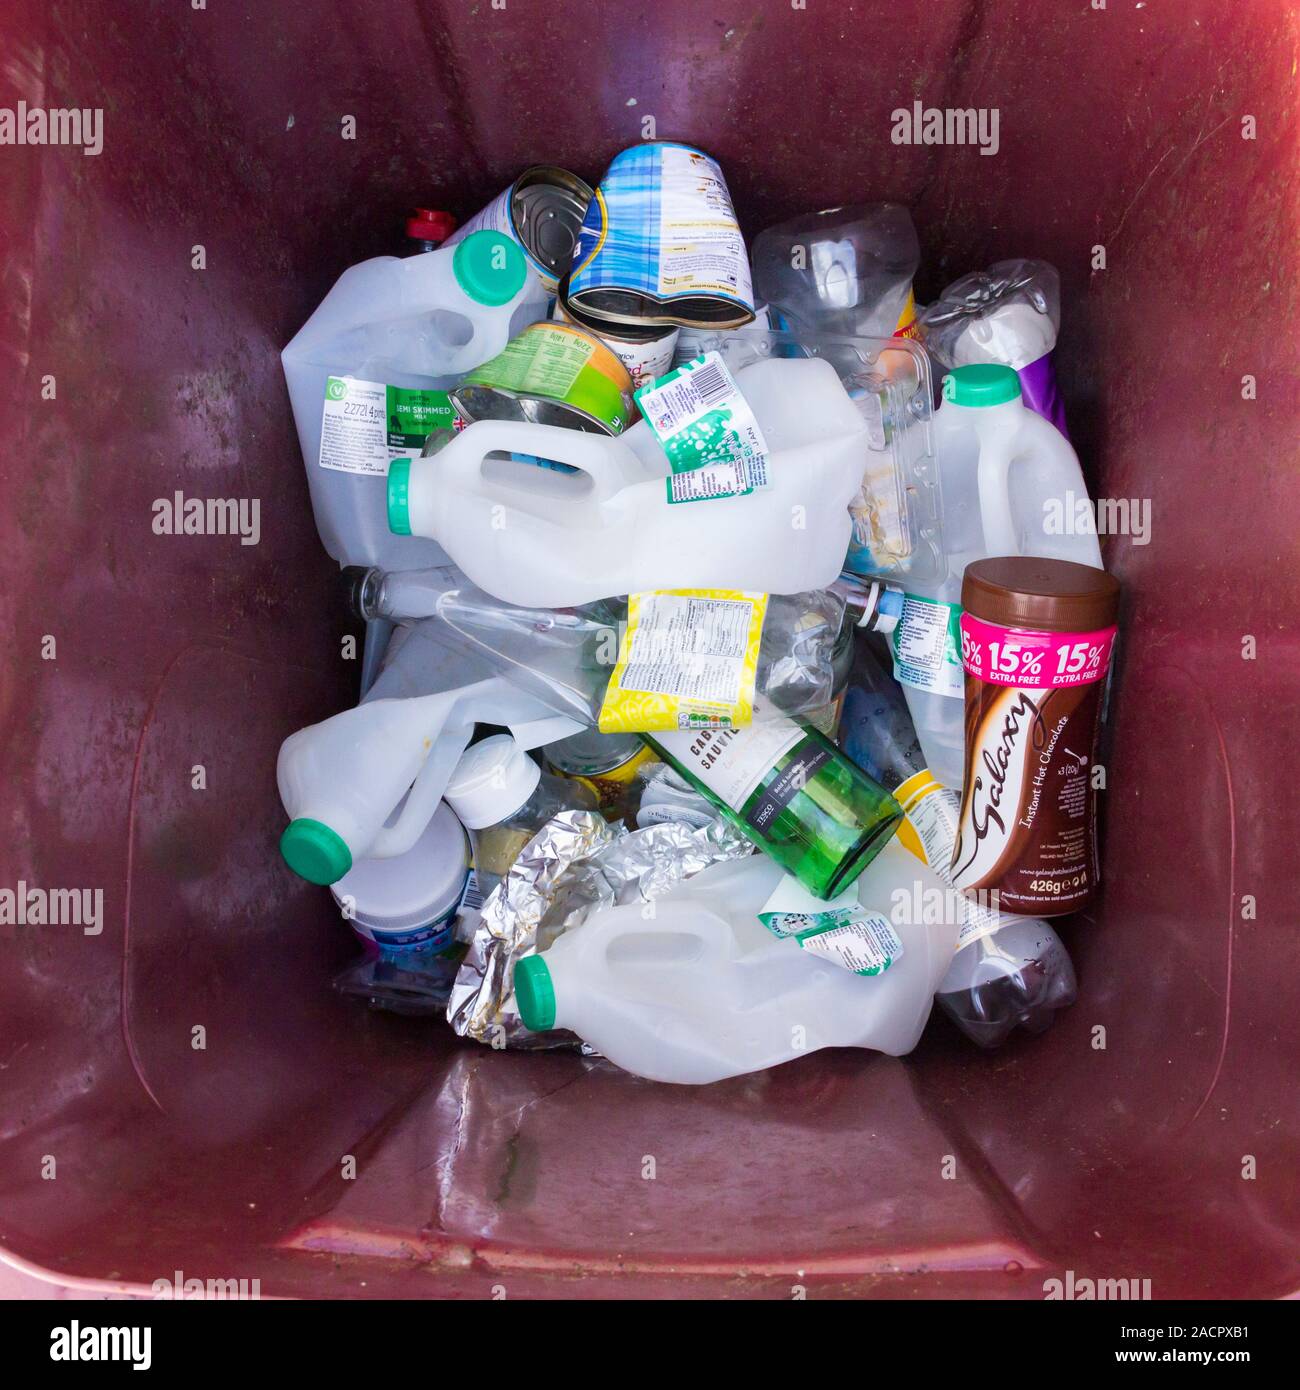 Los residuos domésticos reciclables: botellas de plástico, latas de metal y frasco de vidrio reciclado de los residuos domésticos en un maroon caballito bin. Foto de stock